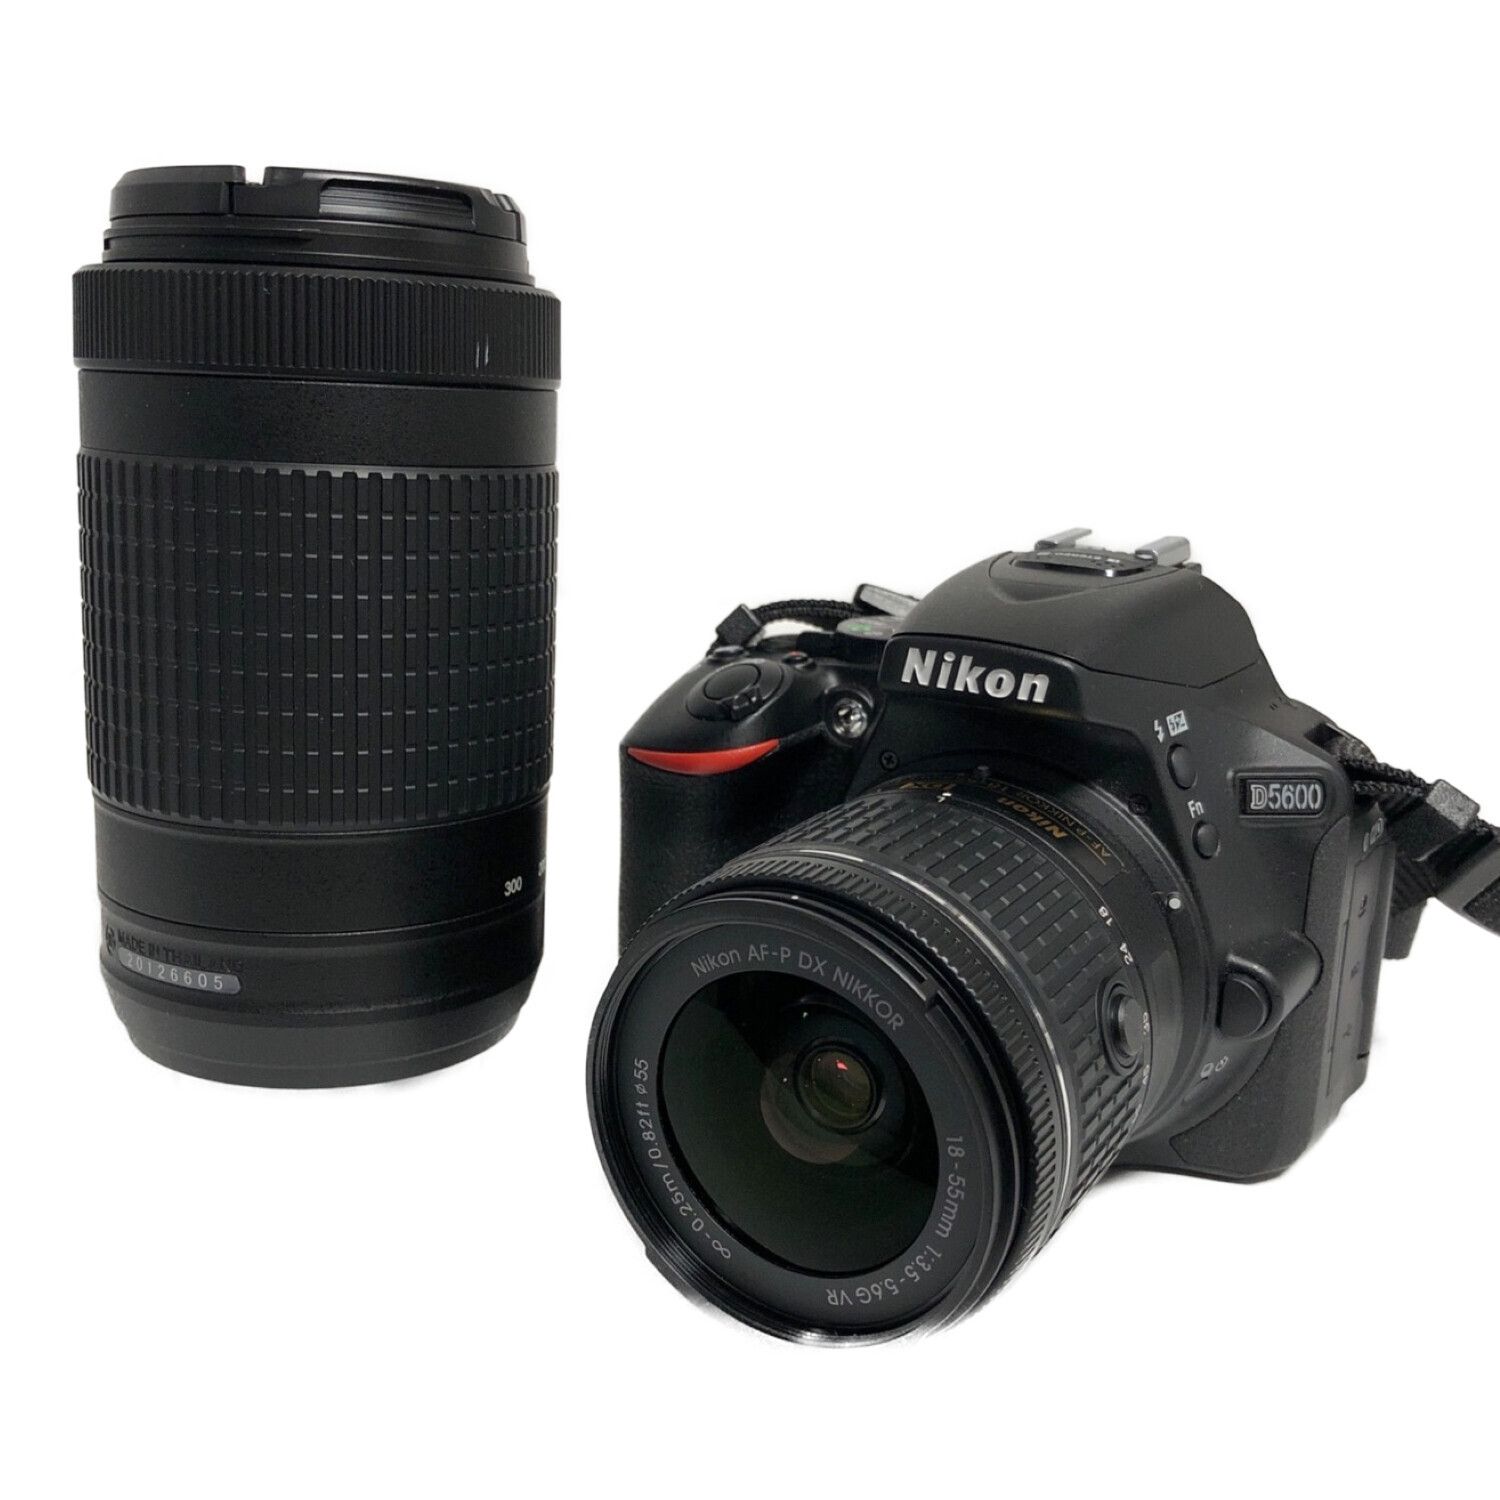 Nikon (ニコン) デジタル一眼レフカメラ ダブルズームキット D5600 